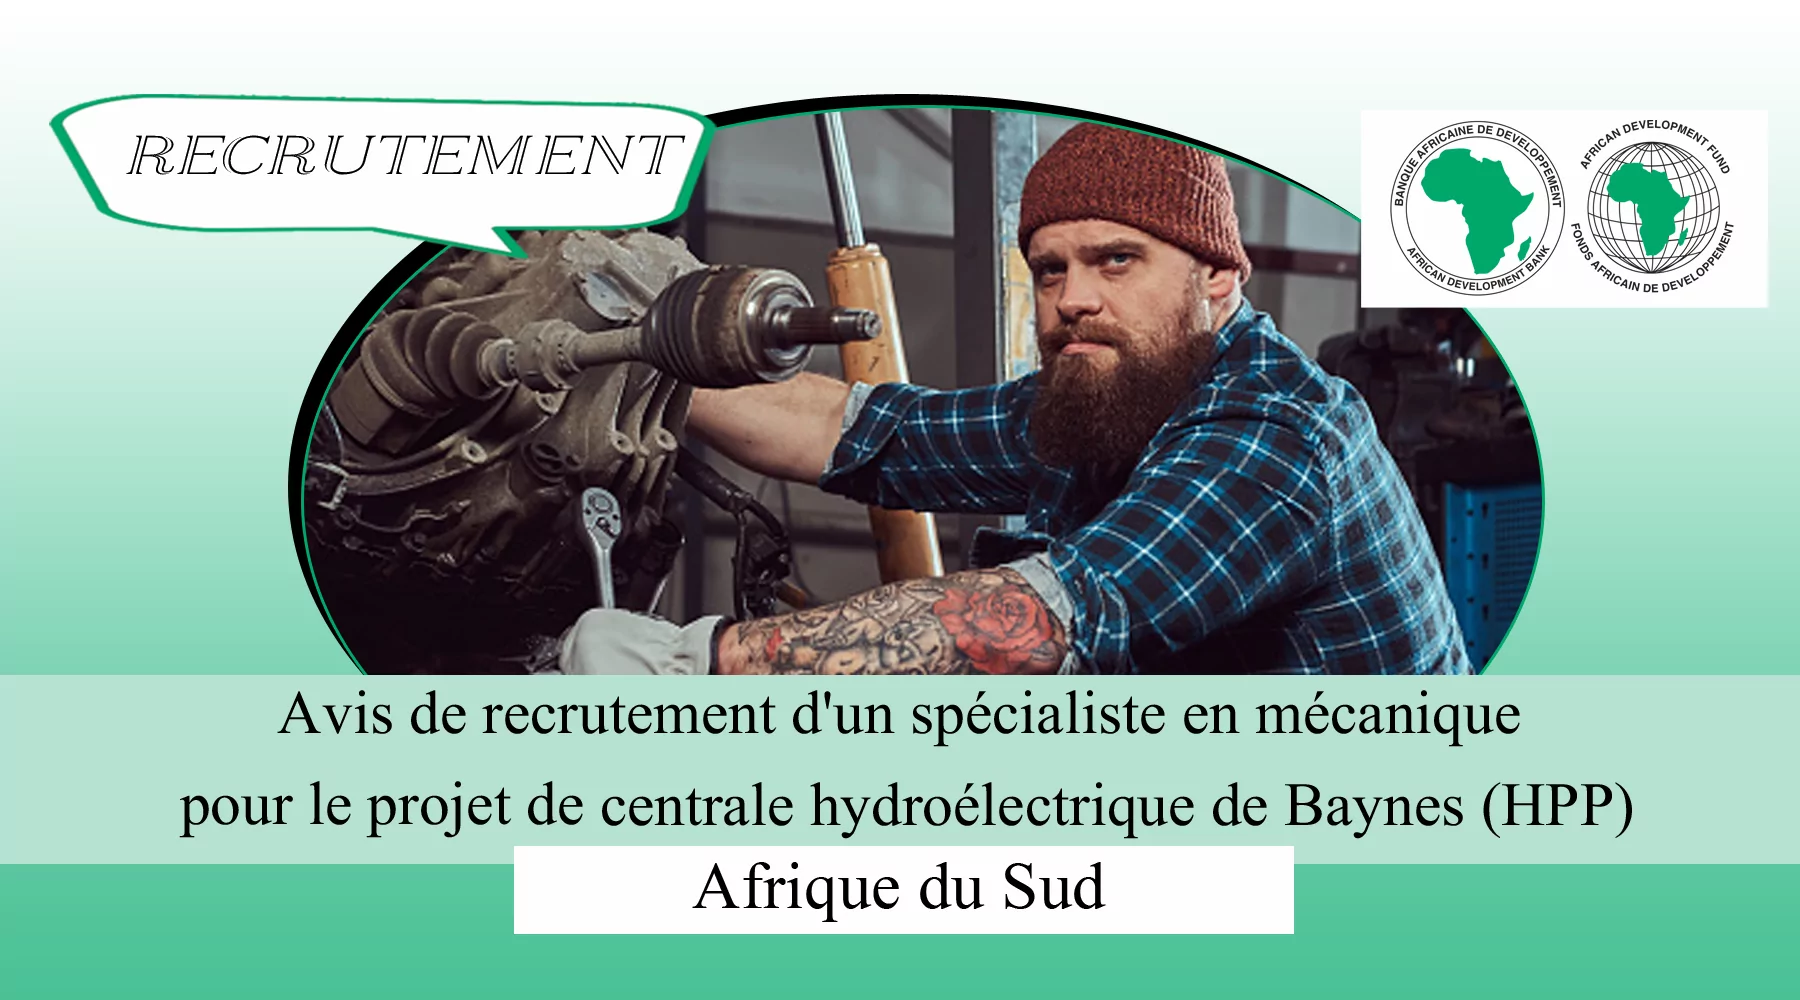 Avis de recrutement d’un spécialiste en mécanique pour le projet de centrale hydroélectrique de Baynes (HPP), Afrique du Sud